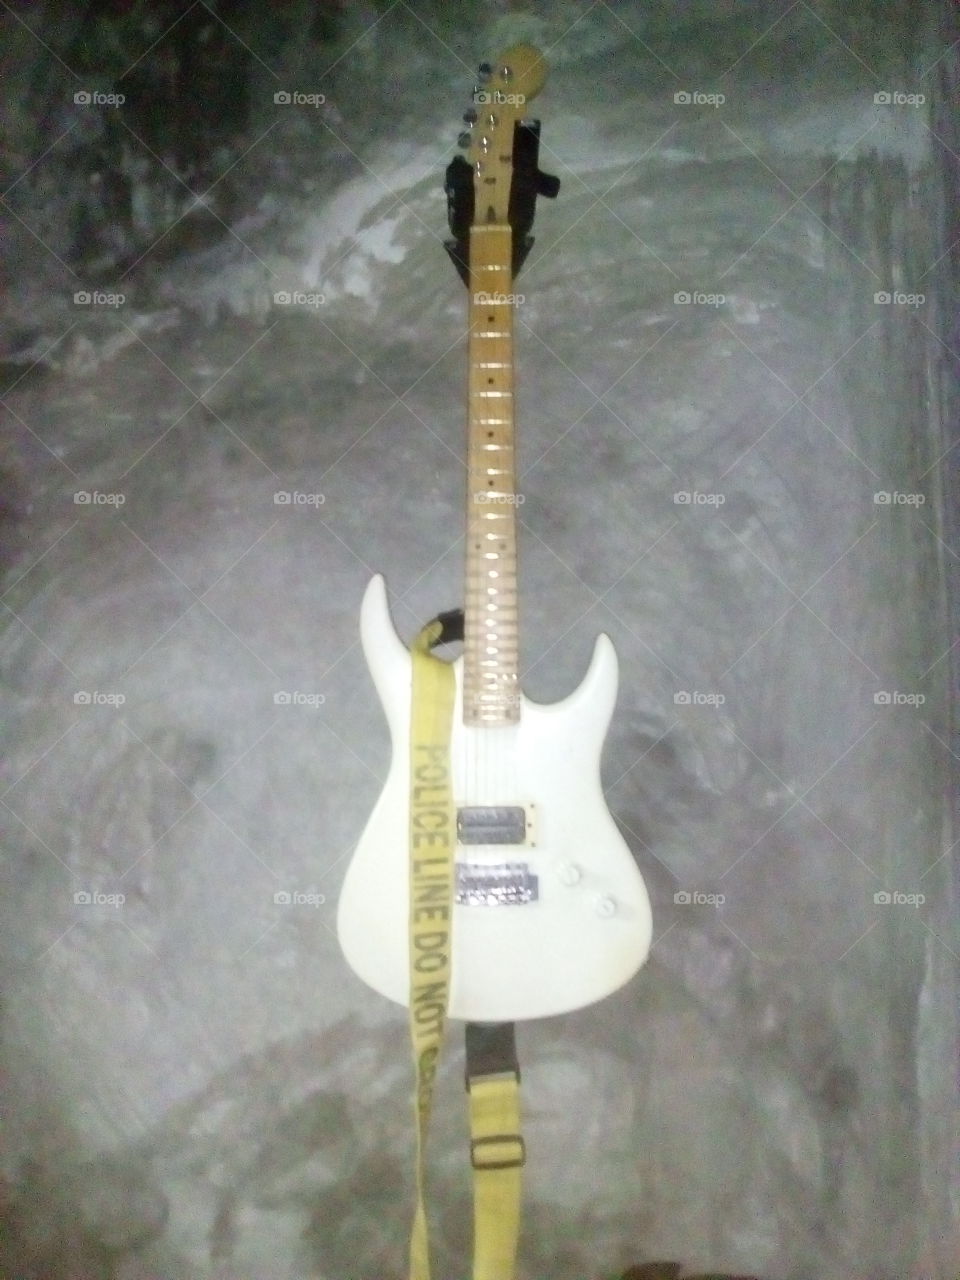 my guitar